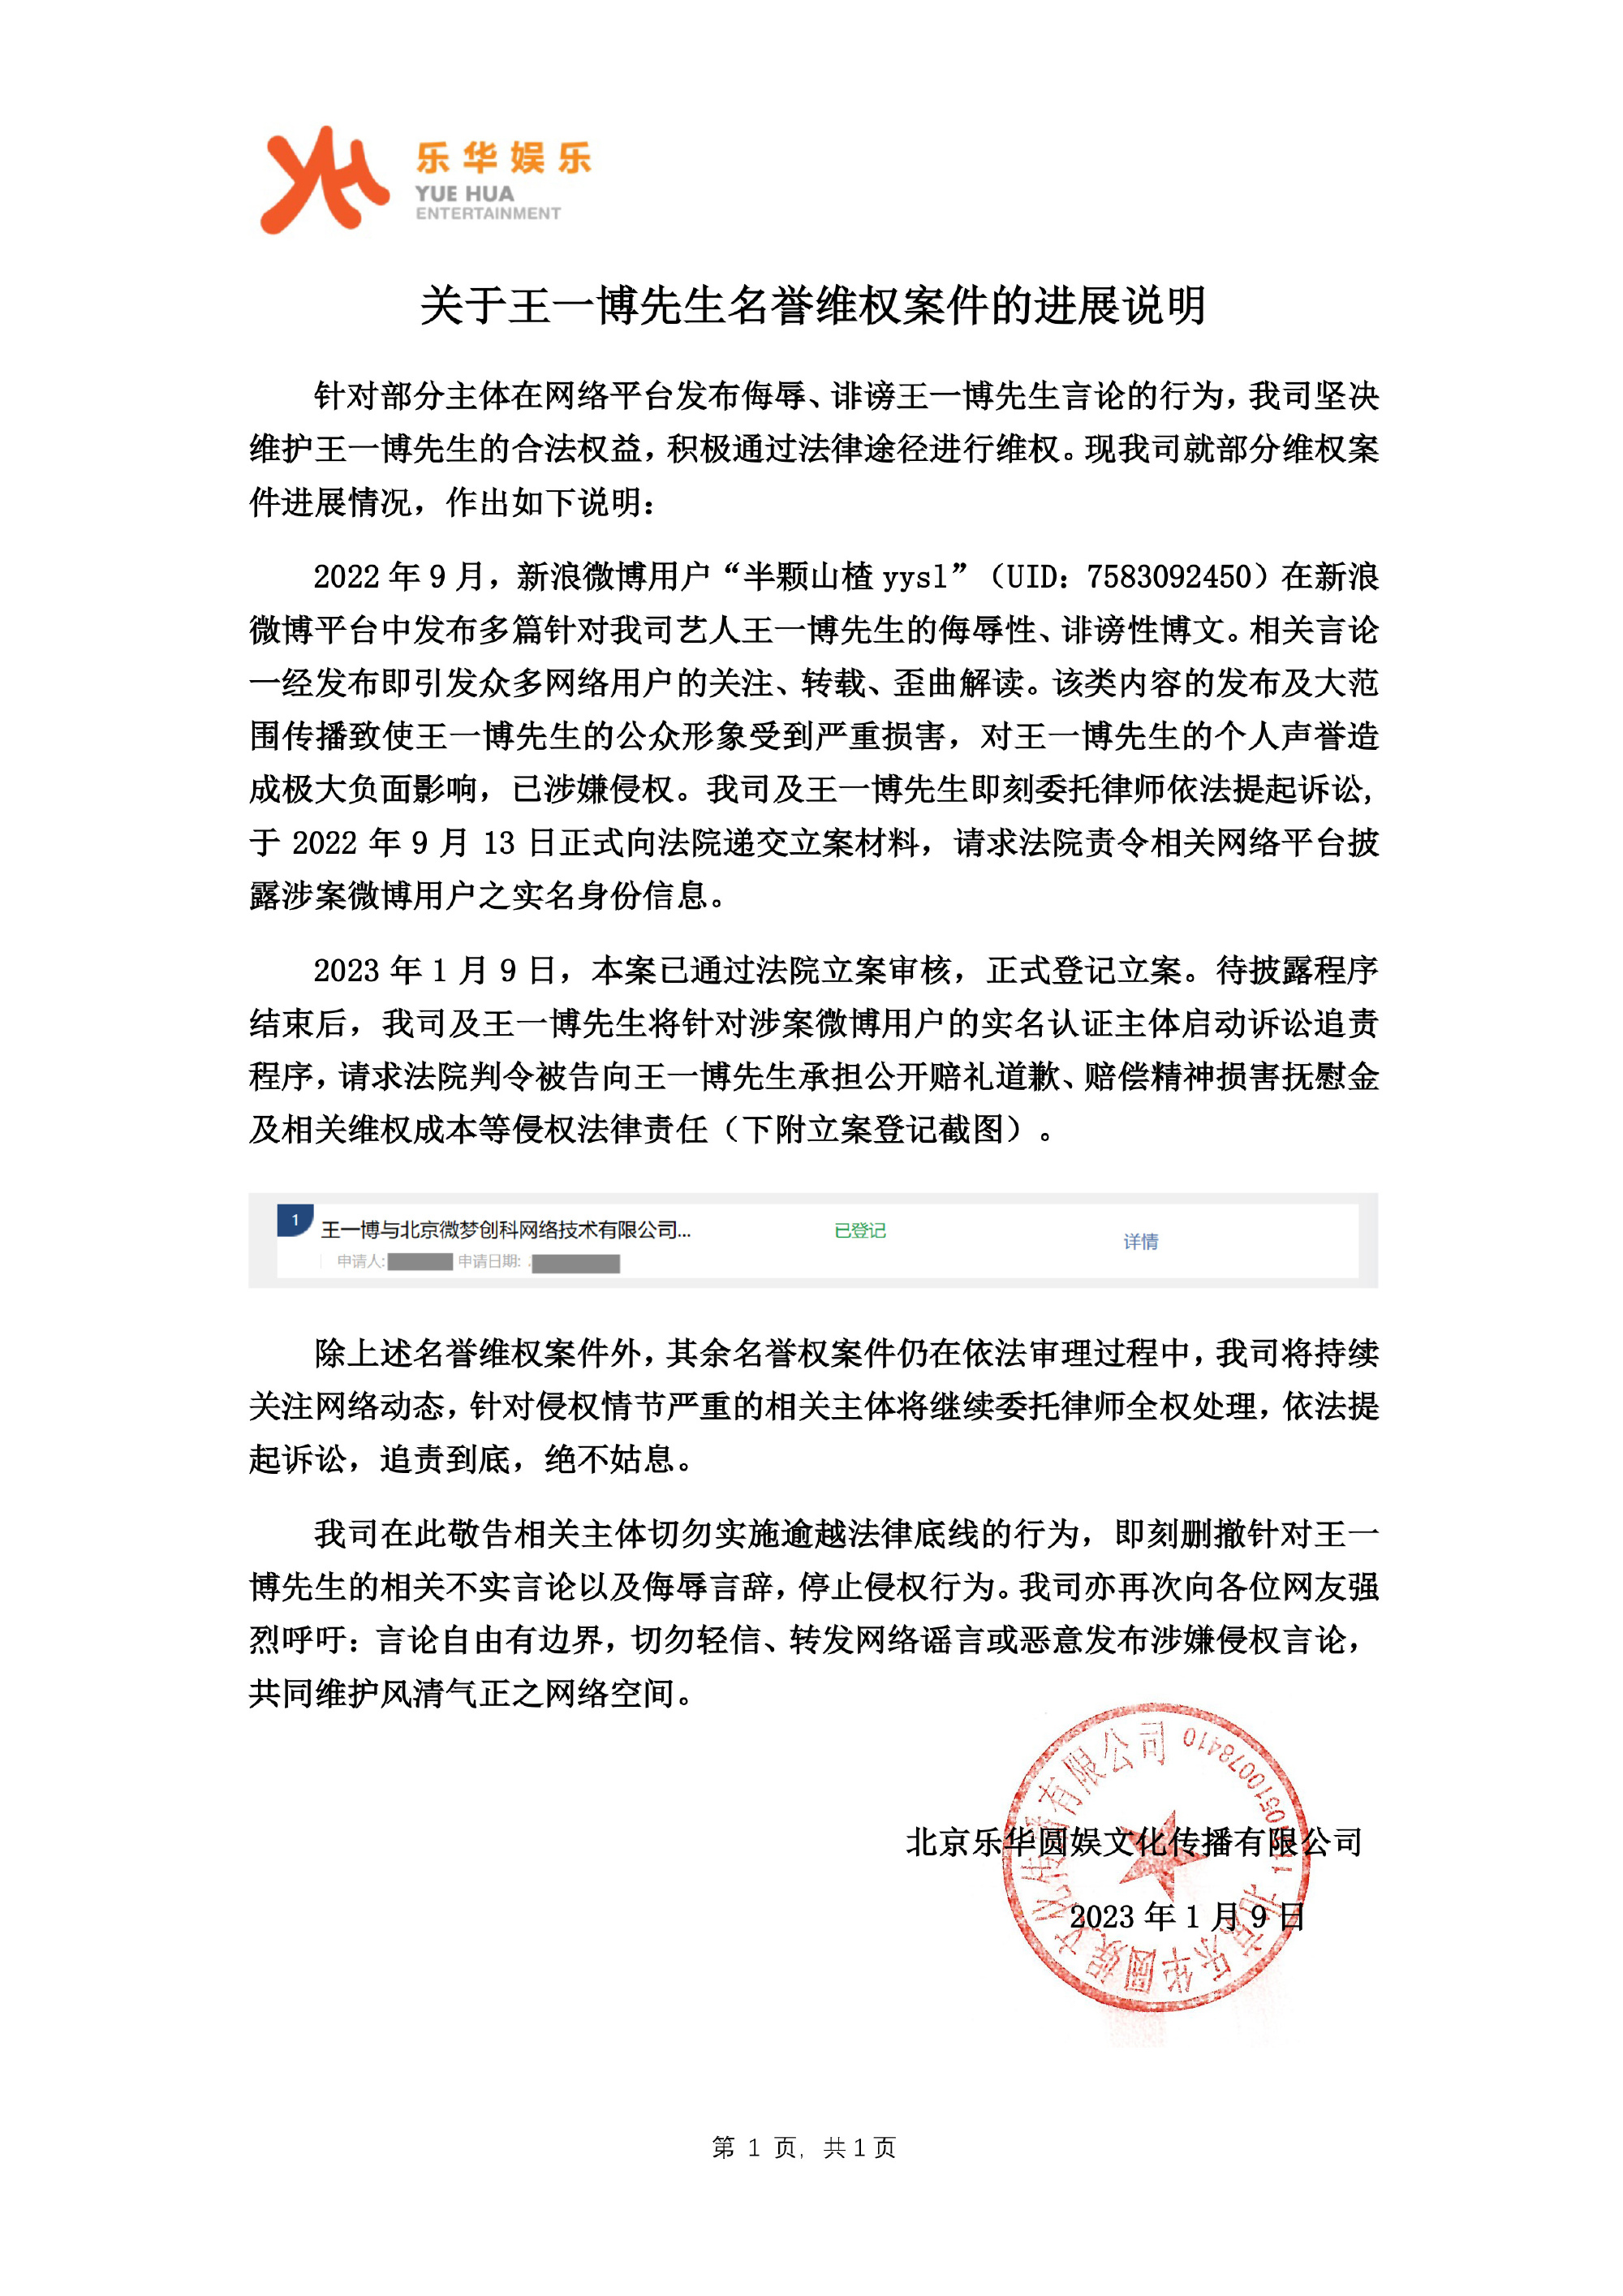 乐华娱乐公布王一博维权案件进展:已通过立案审核